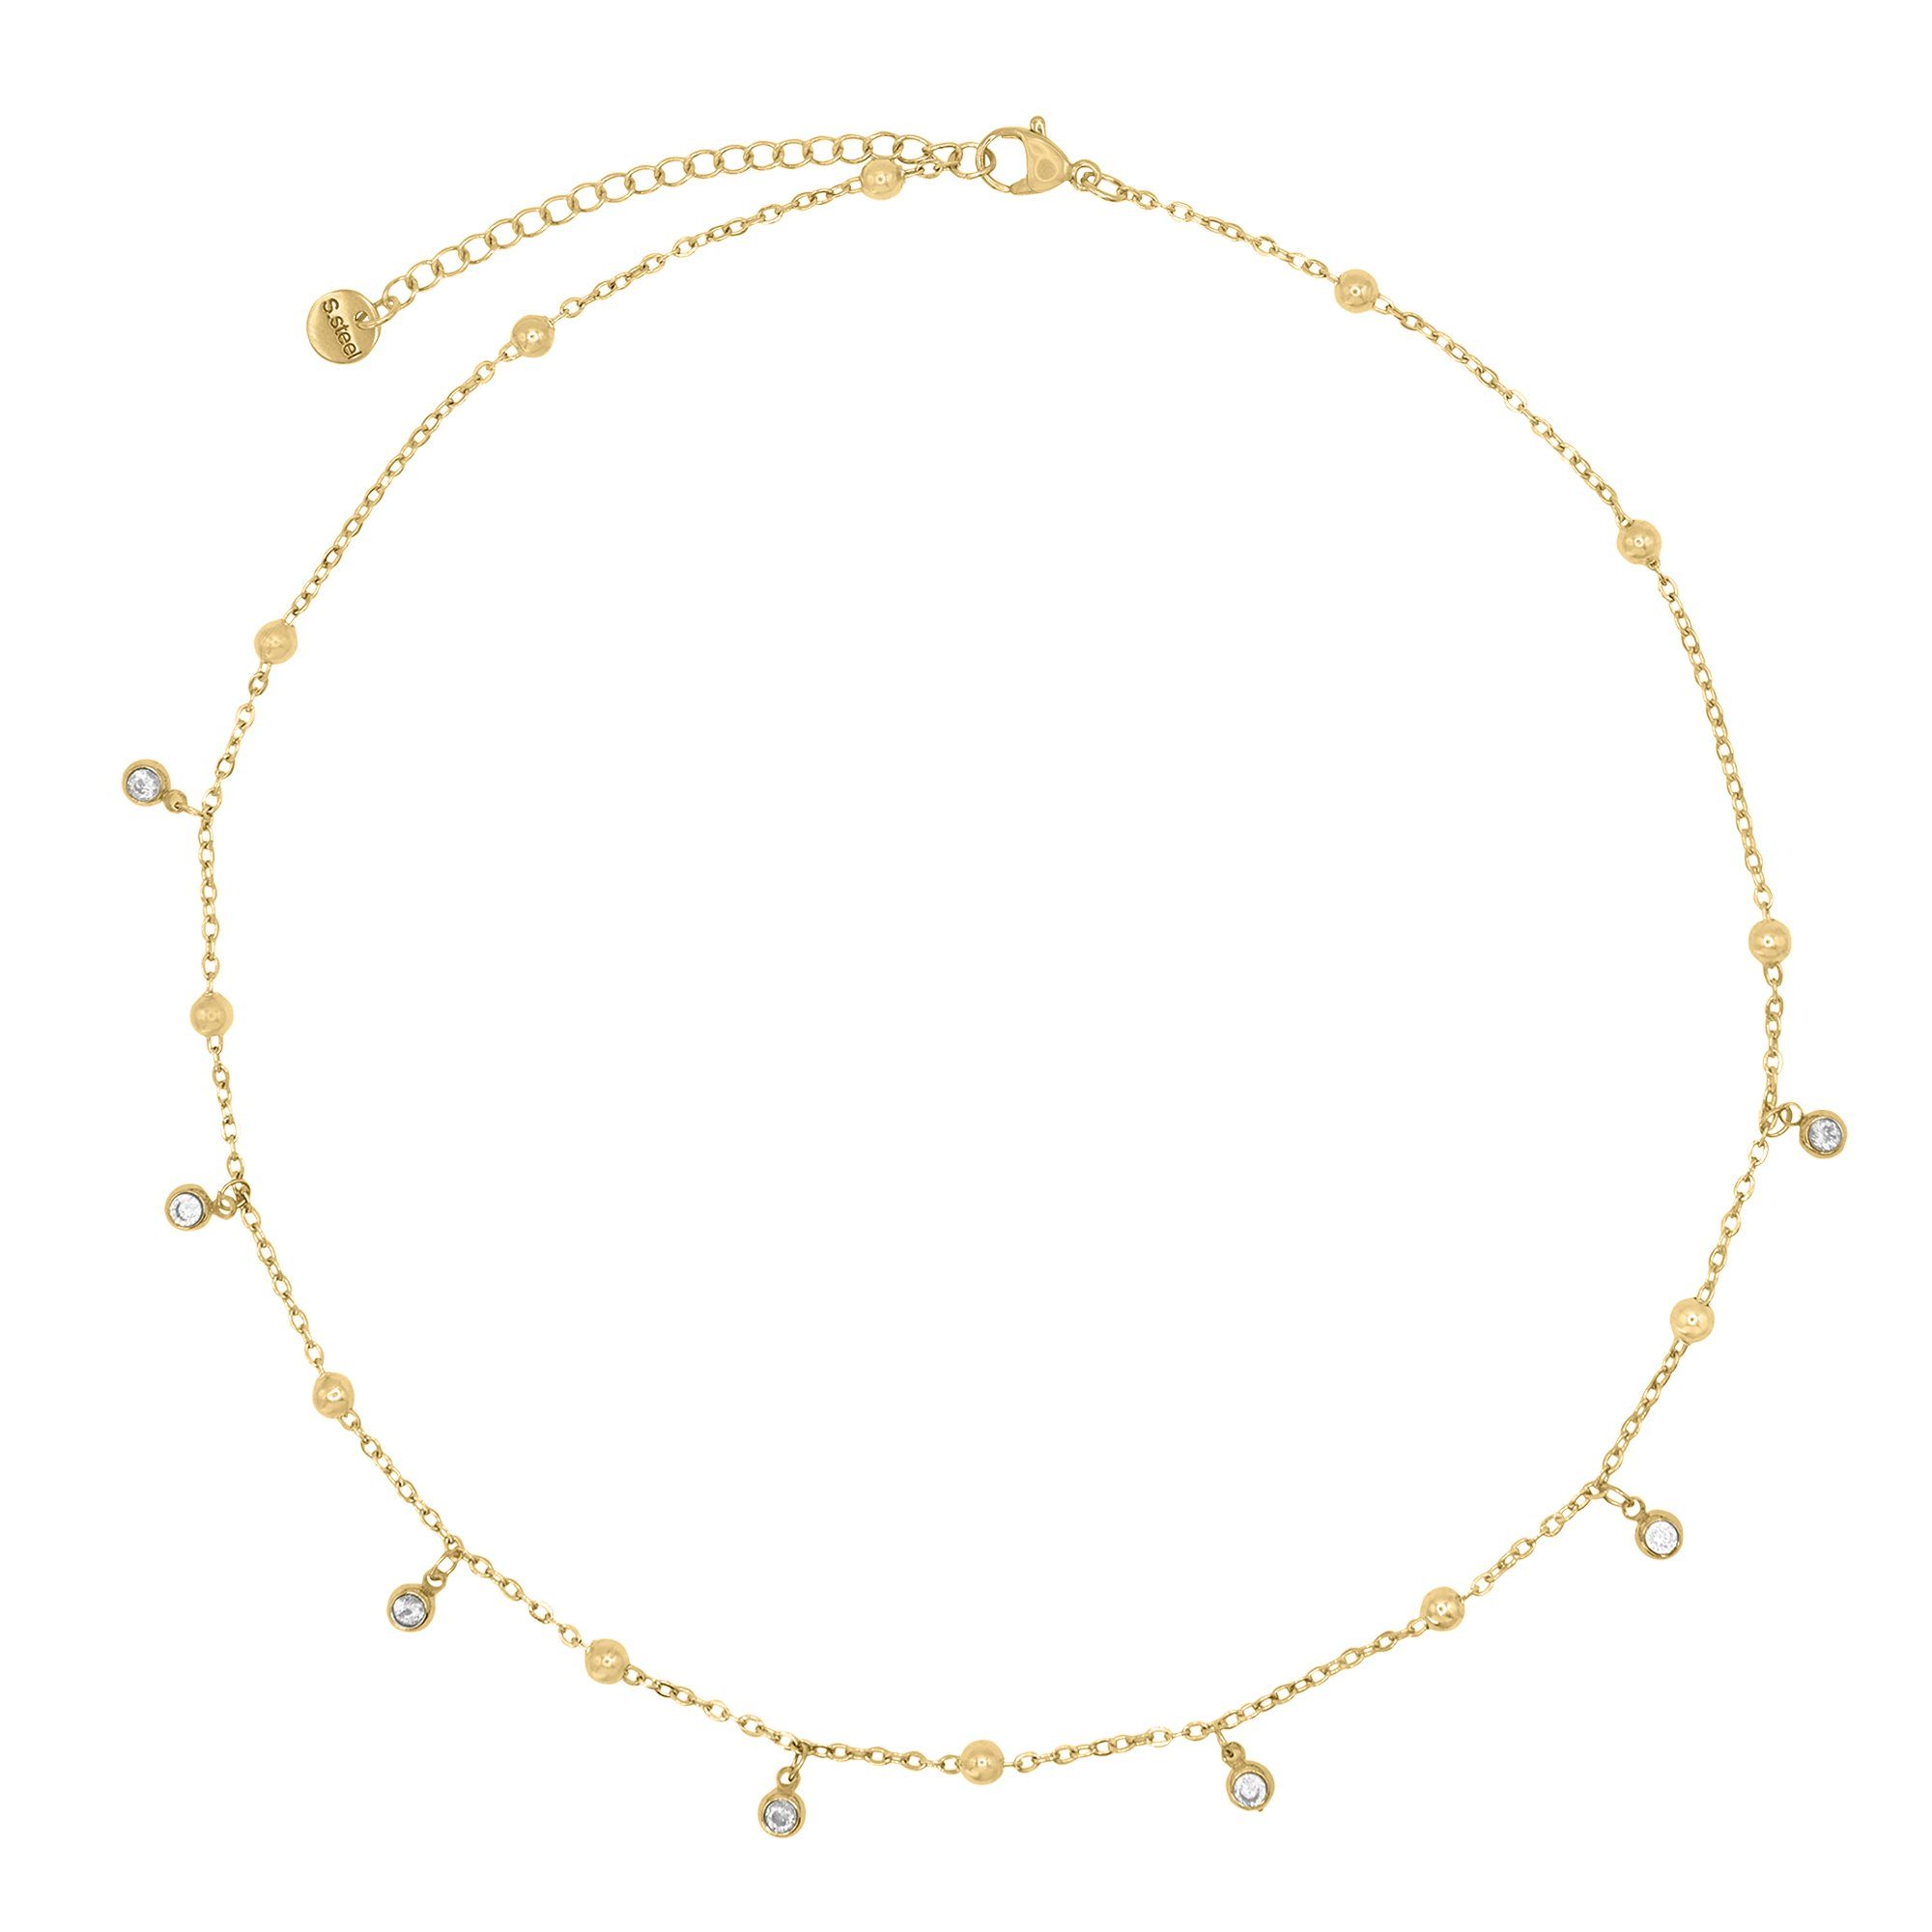 Heideman Collier Jade goldfarben (inkl. Geschenkverpackung), Halskette mit Steinen